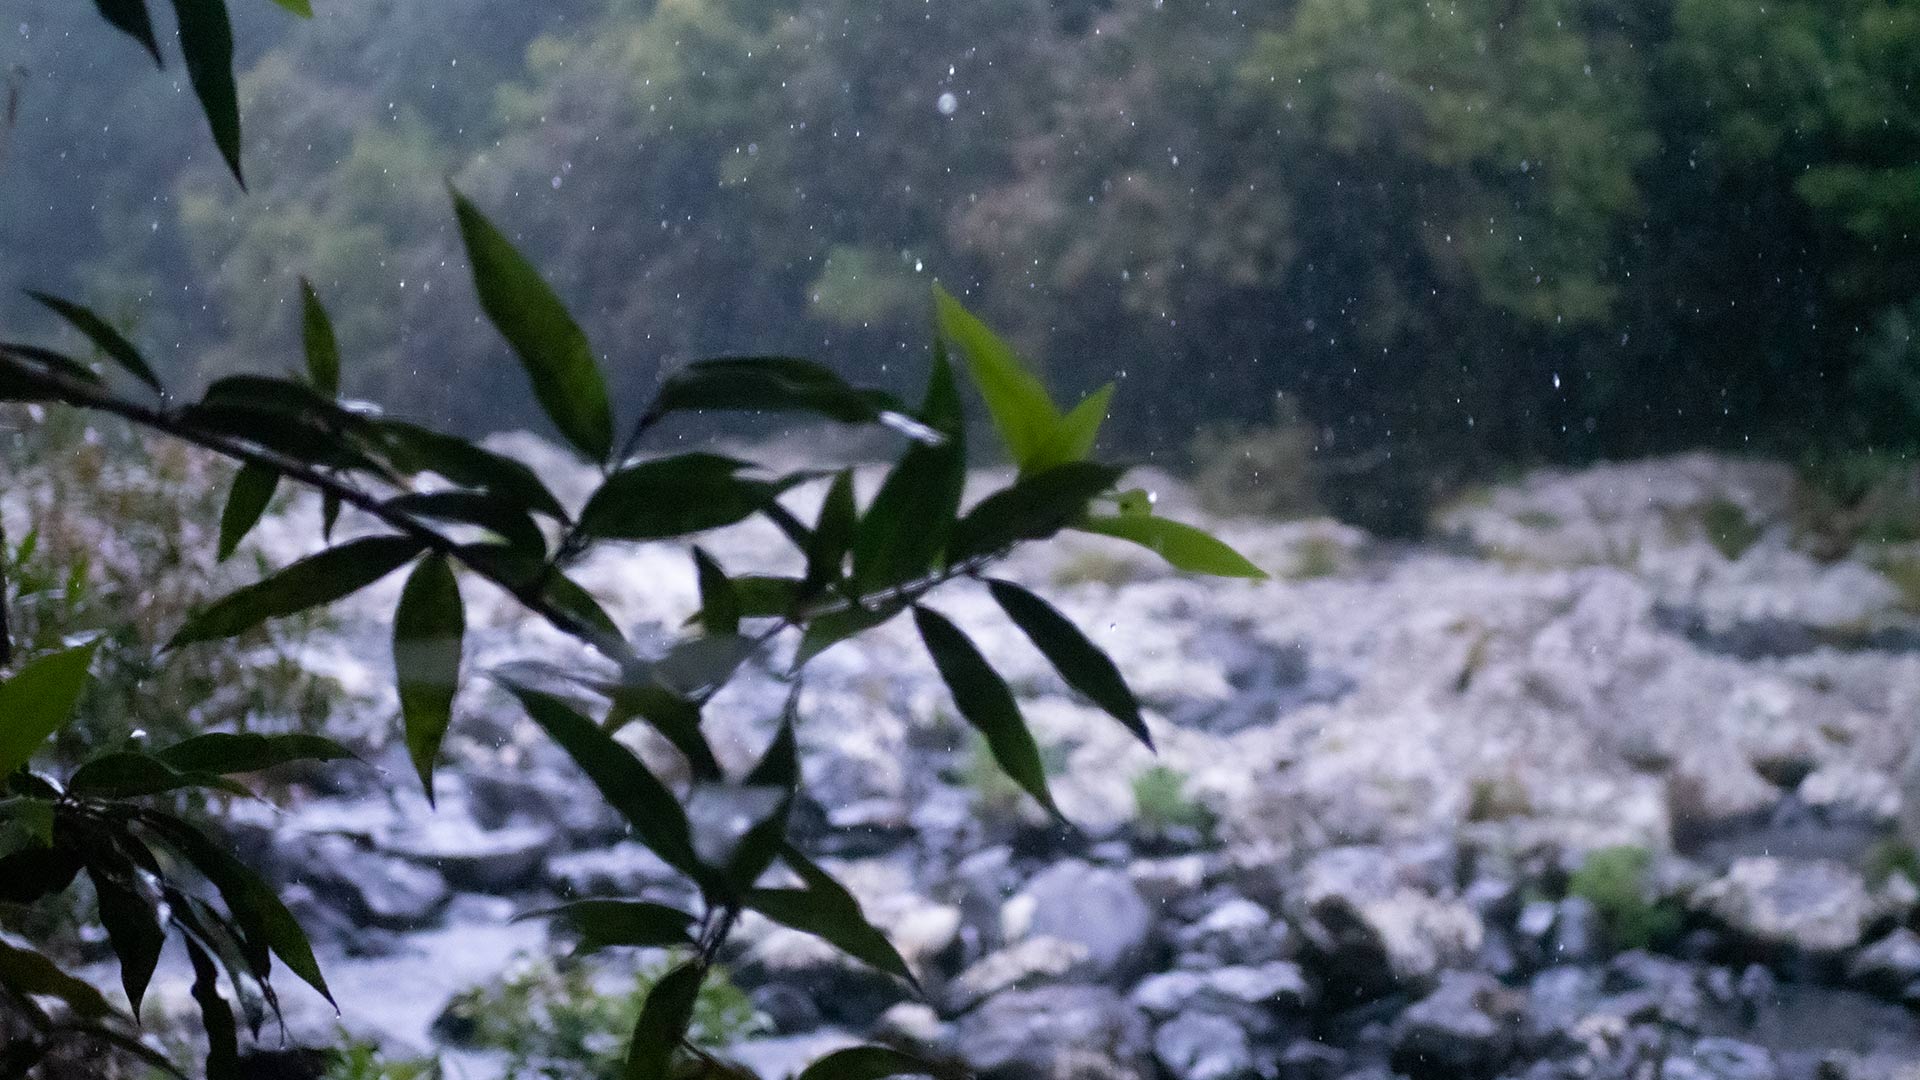 Météo à La Réunion : Dégradation pluvieuse attendue ces prochains jours